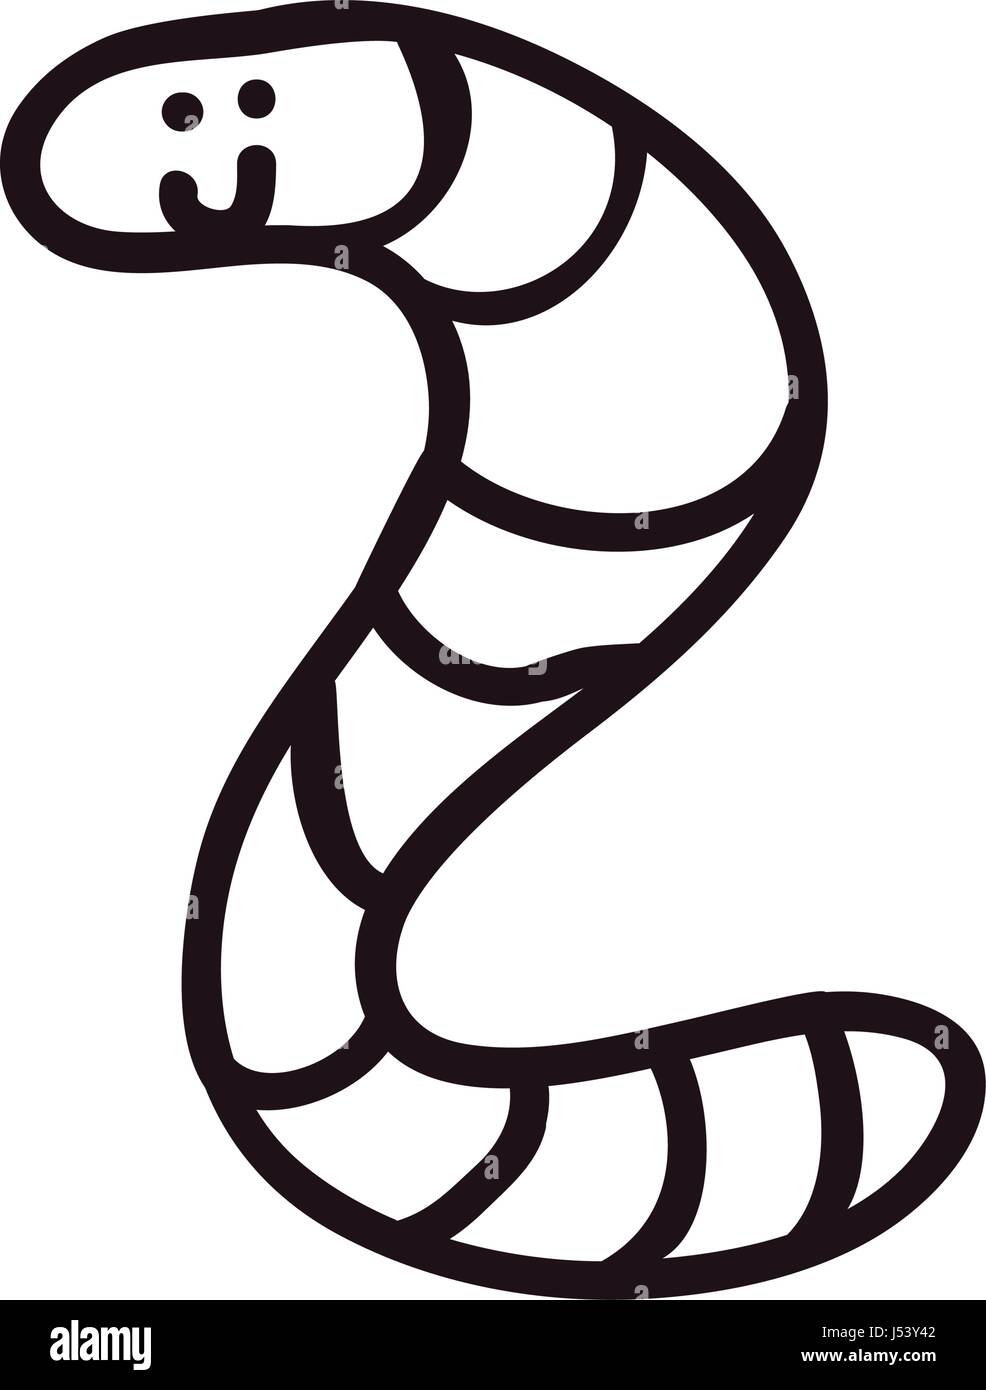 worm doodle cartoon Stock Vector